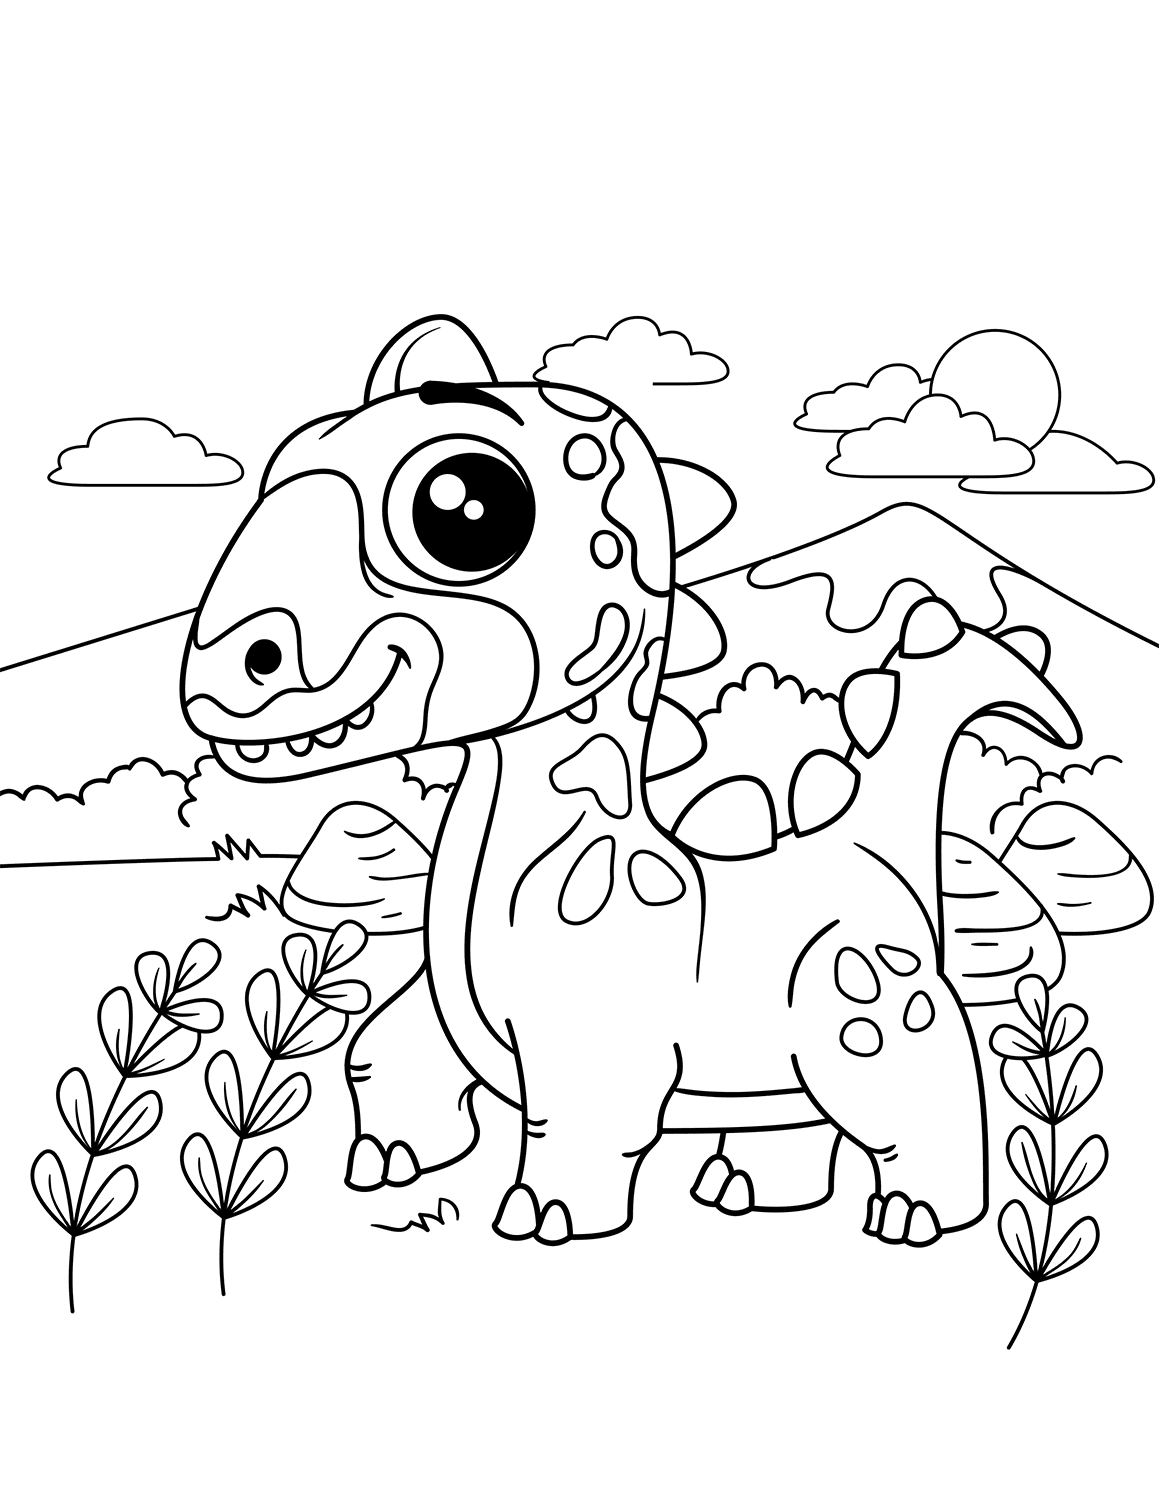 Динозавры для раскрашивания. Динозавры / раскраска. Динозавр раскраска для детей. Раскраска "Динозаврики". Шонизавр раскраска.